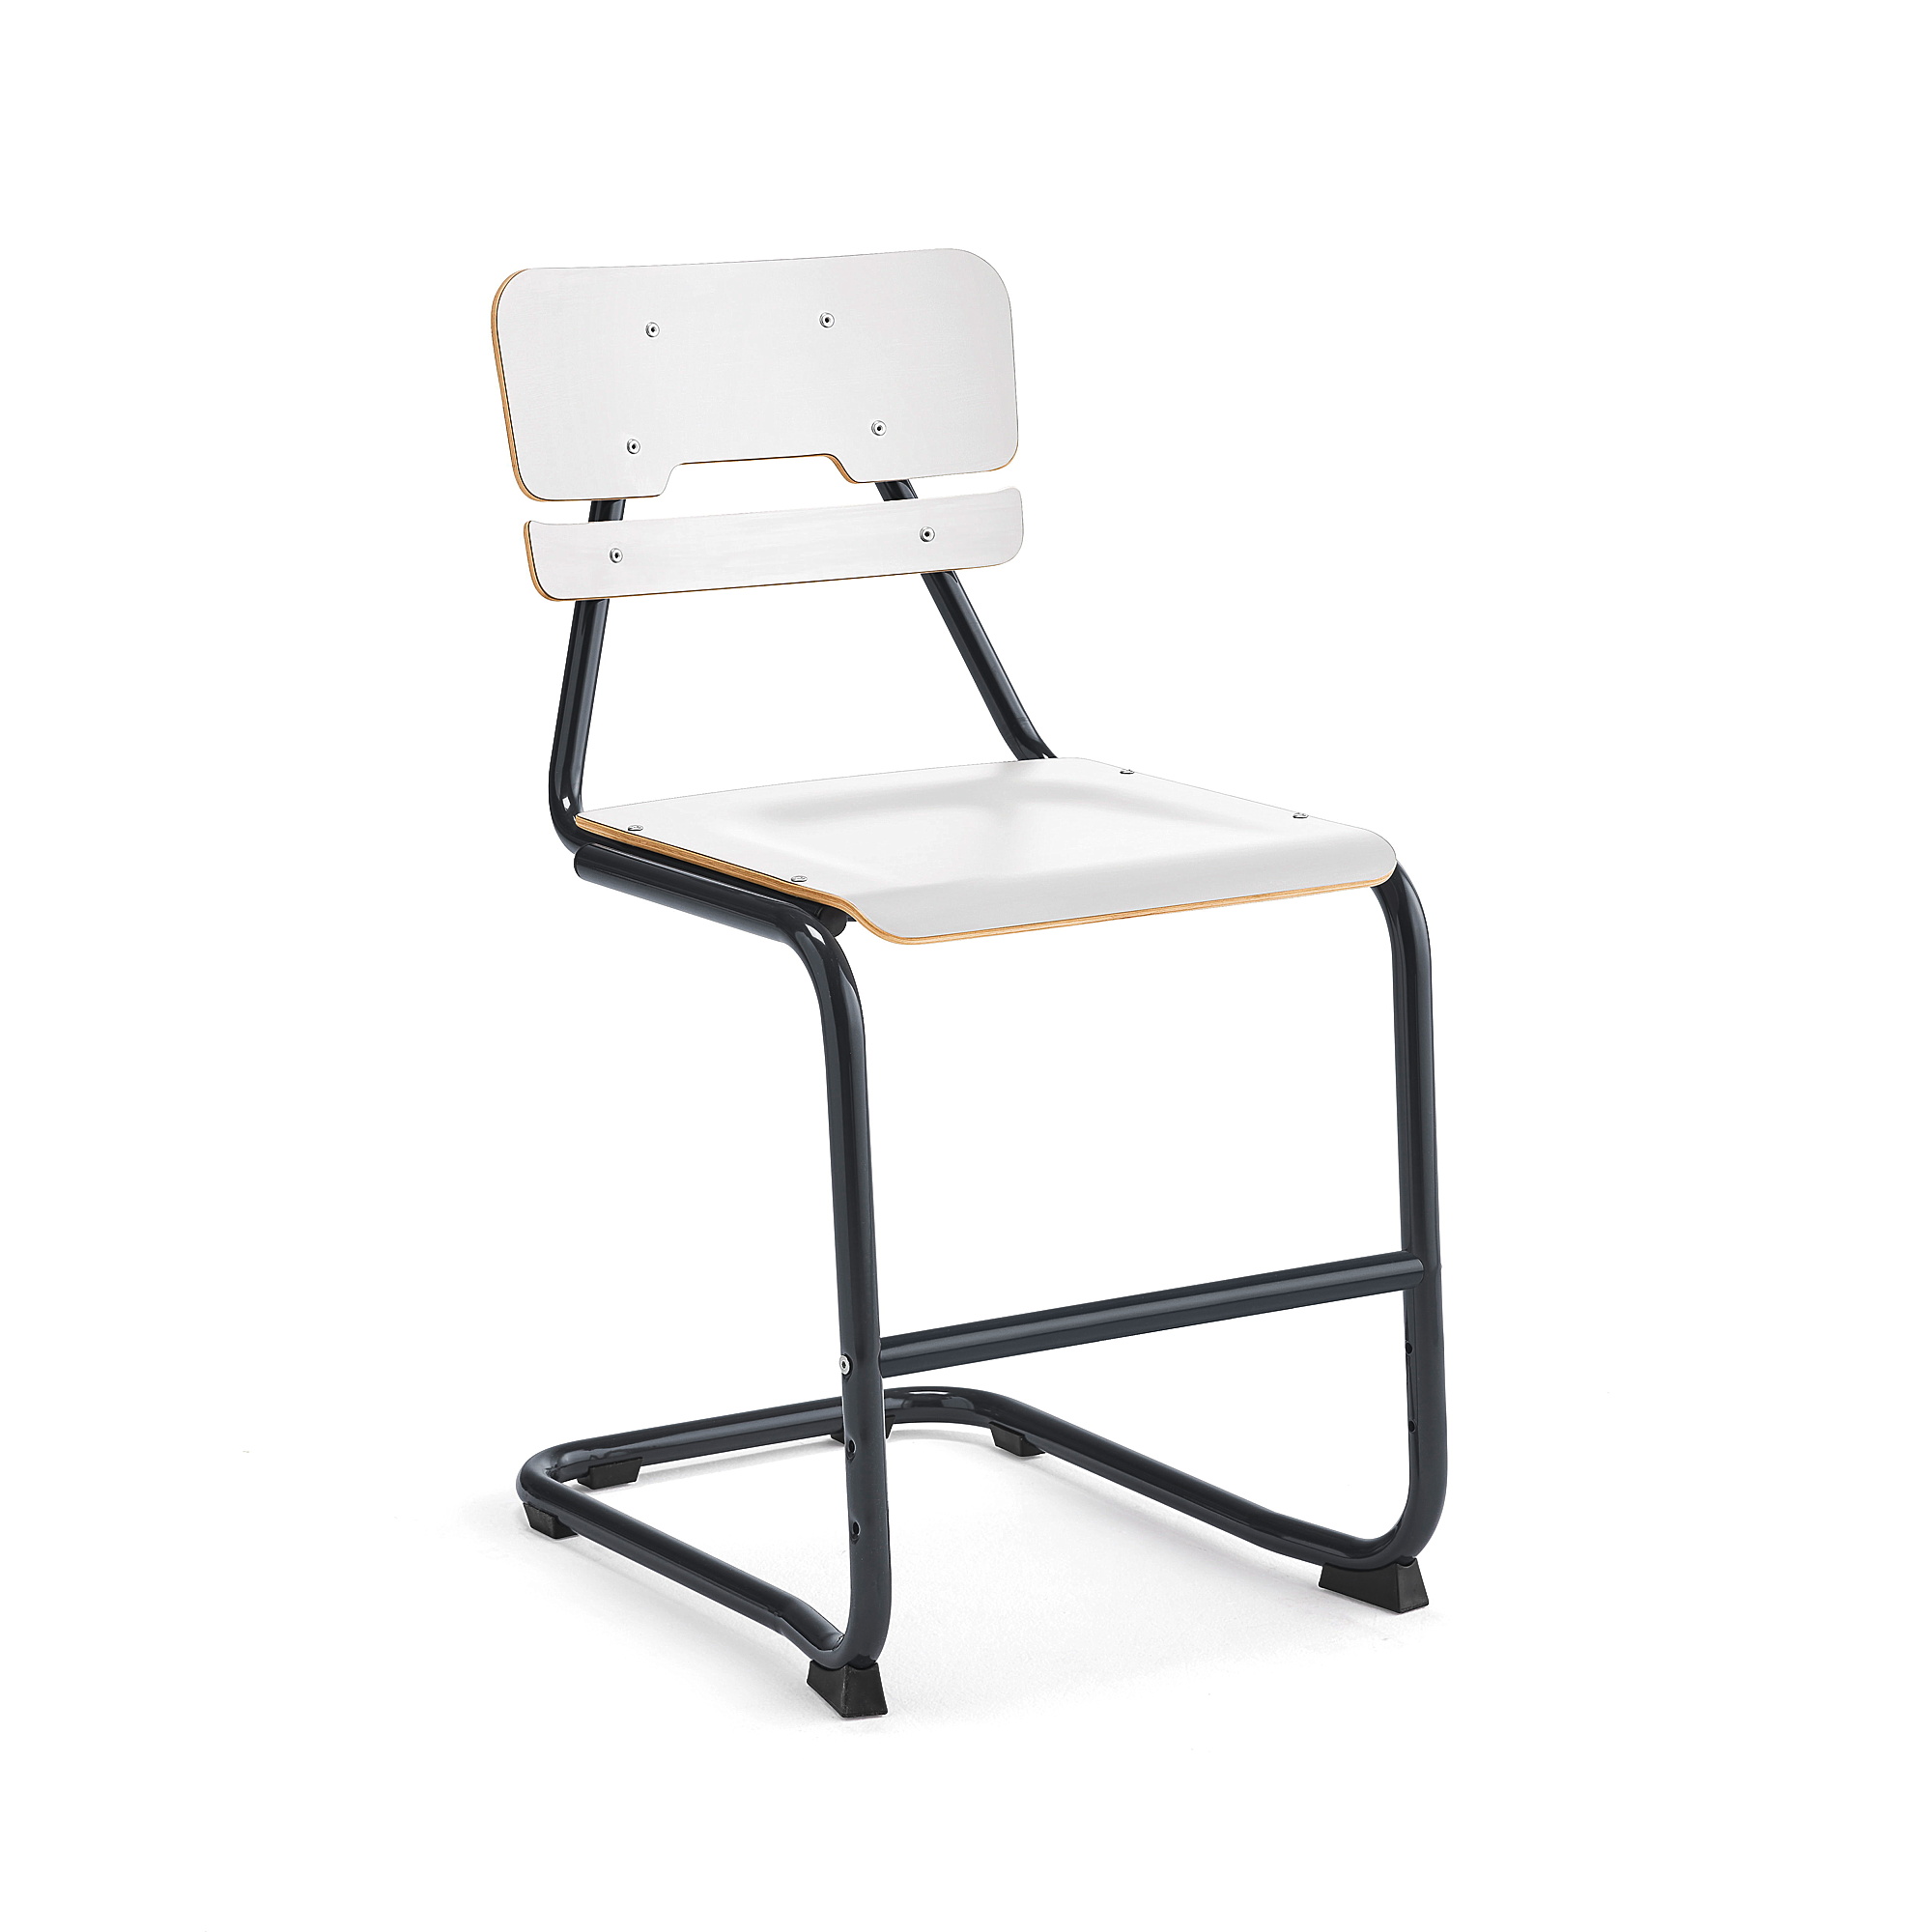 Školní židle LEGERE II, výška 500 mm, antracitově šedá, bílá